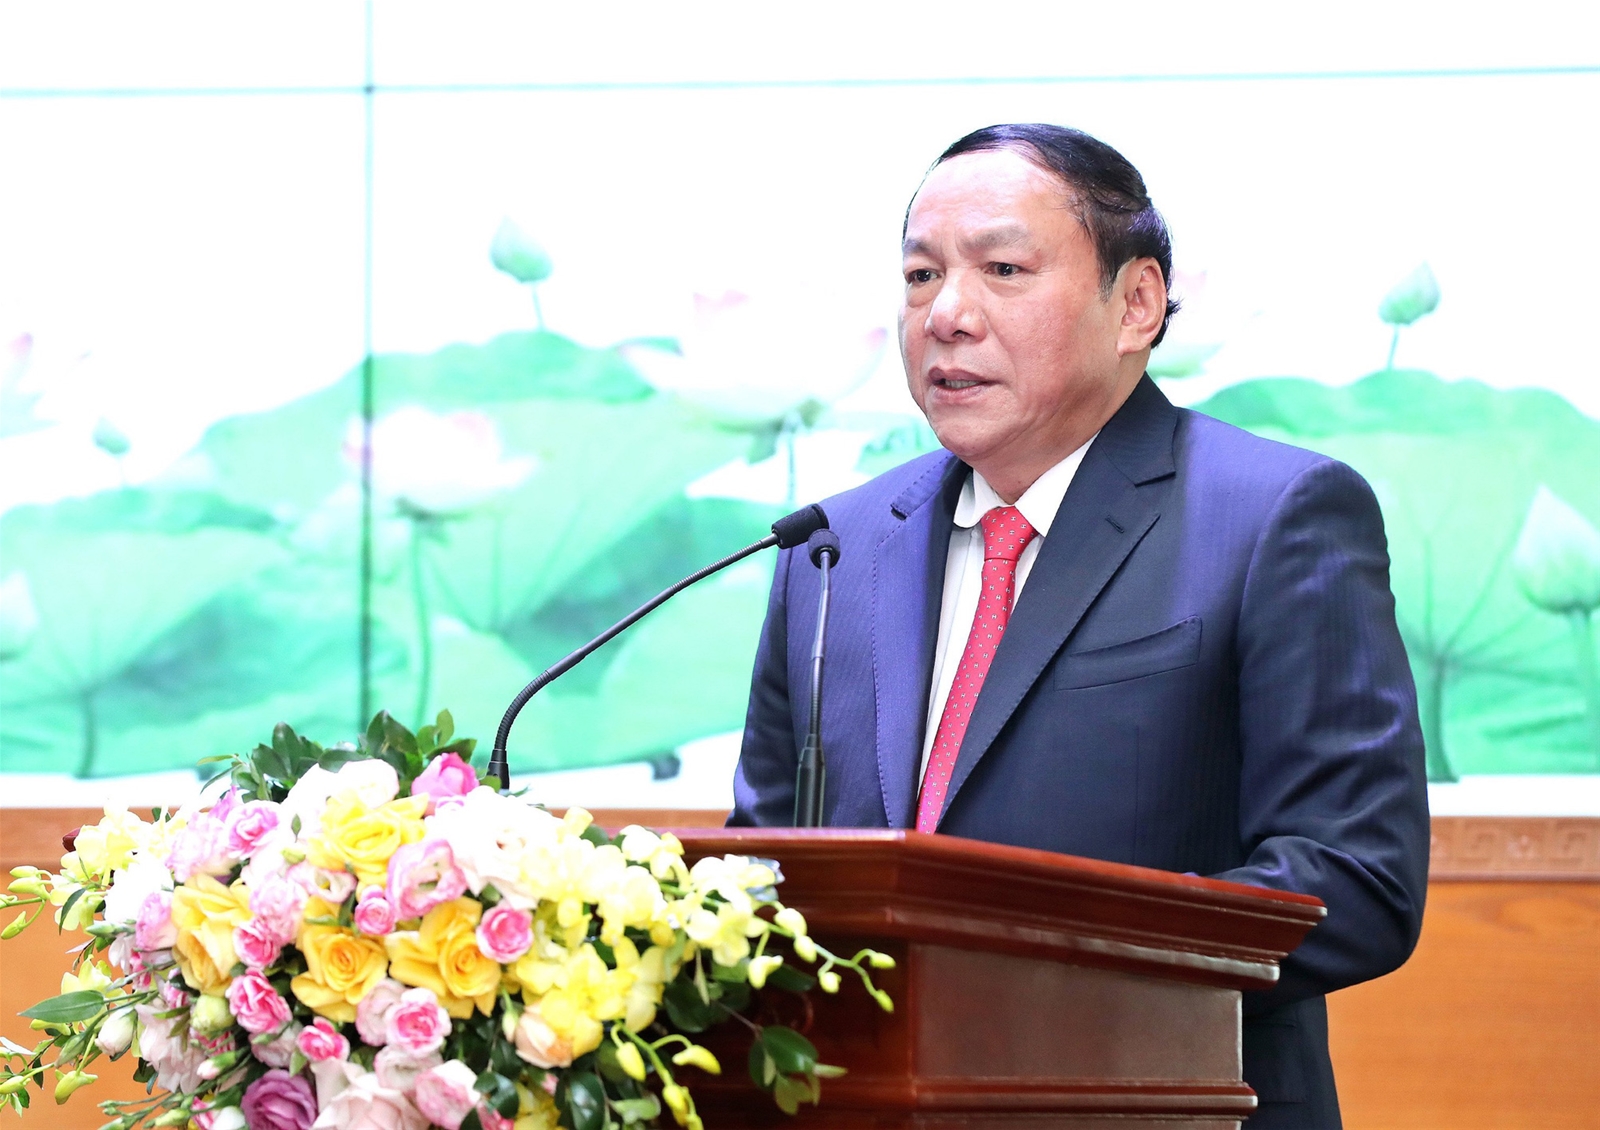 Thư chúc mừng của Bộ trưởng Nguyễn Văn Hùng nhân kỷ niệm 77 năm Ngày Truyền thống Ngành Văn hóa (28/8/1945 - 28/8/2022)